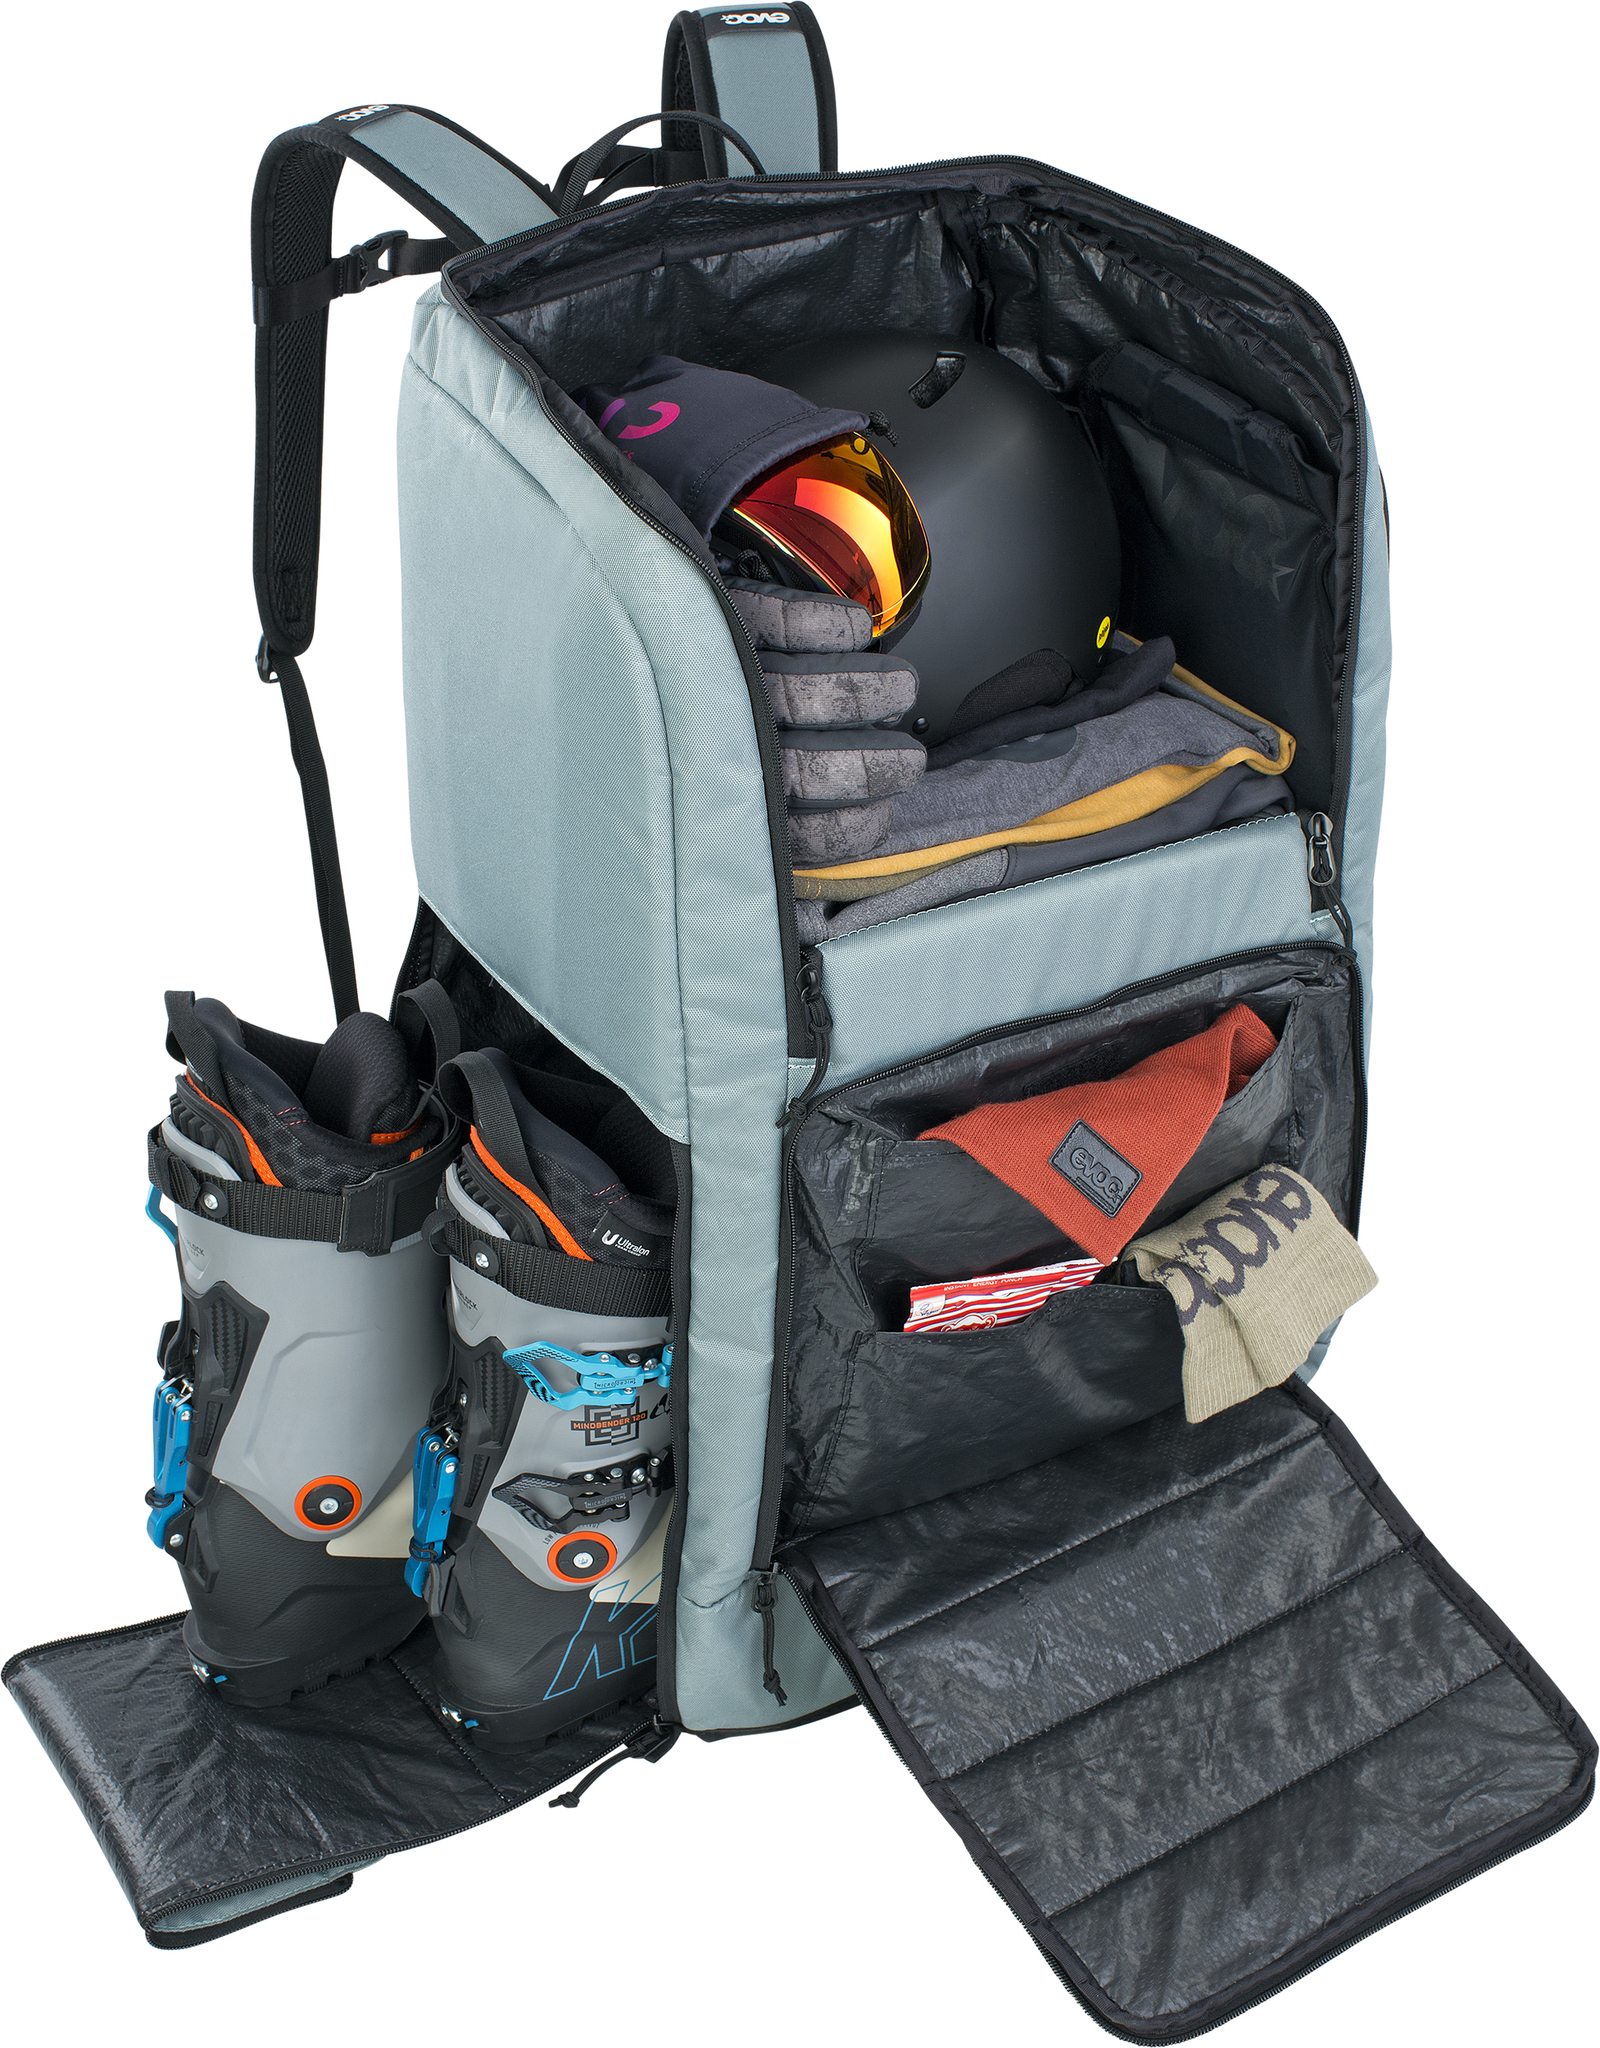 Evoc Gear Backpack 90